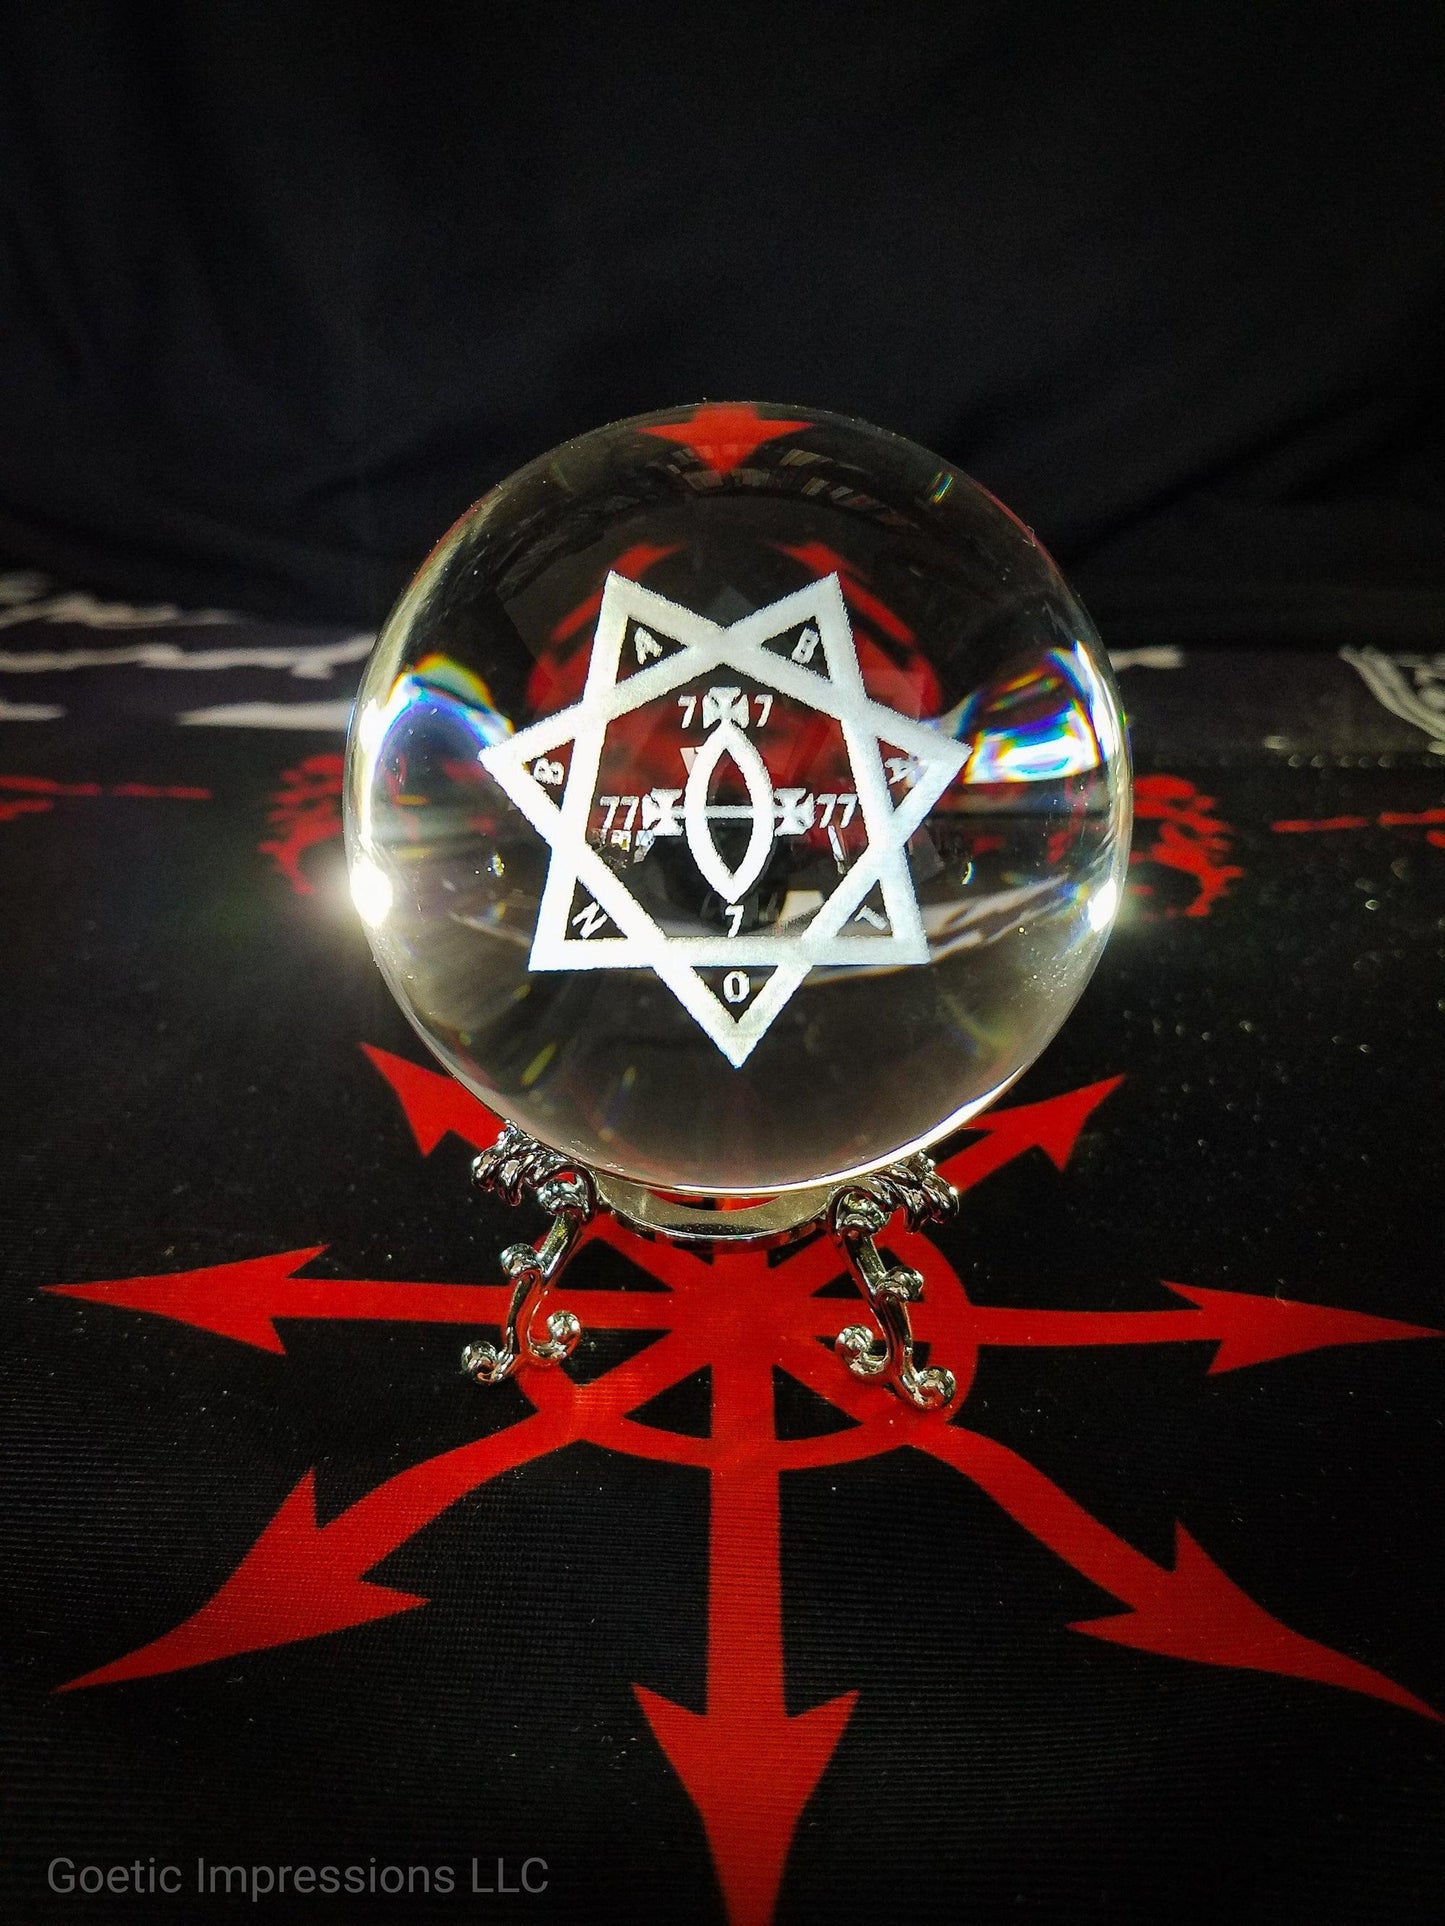 Babalon star sigil crystal ball on a chaos star altar cloth